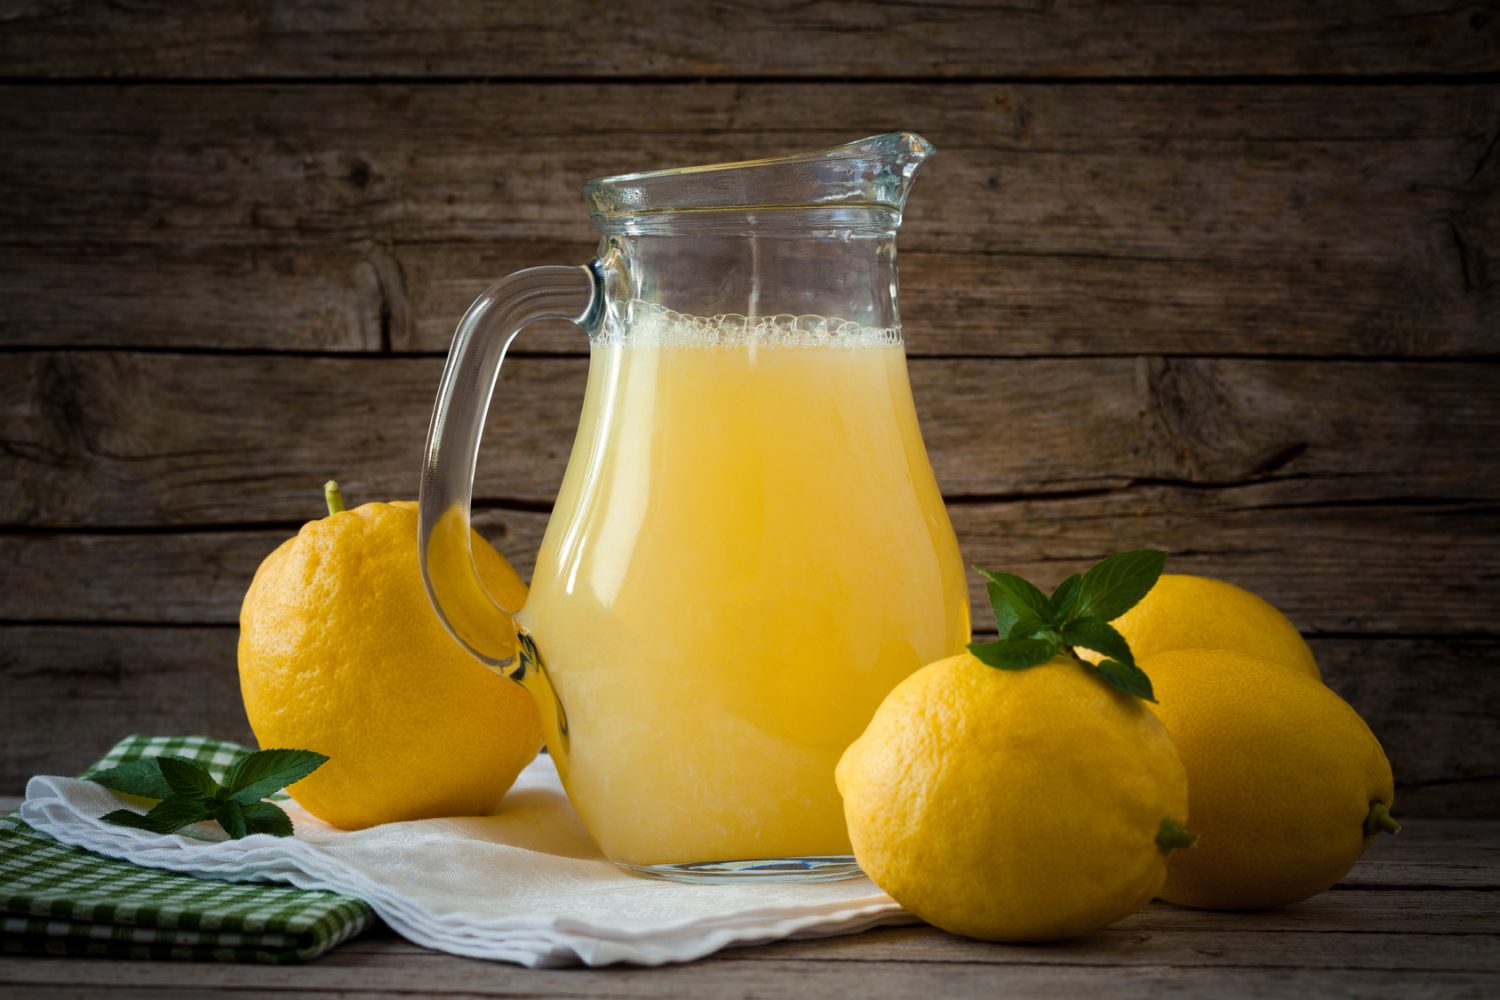 فوائد عصير الليمون المذهلة: تناول كوب كل يوم وشاهد ما سيحدث لجسمك بعد 7 أيام وفق أحدث الدراسات